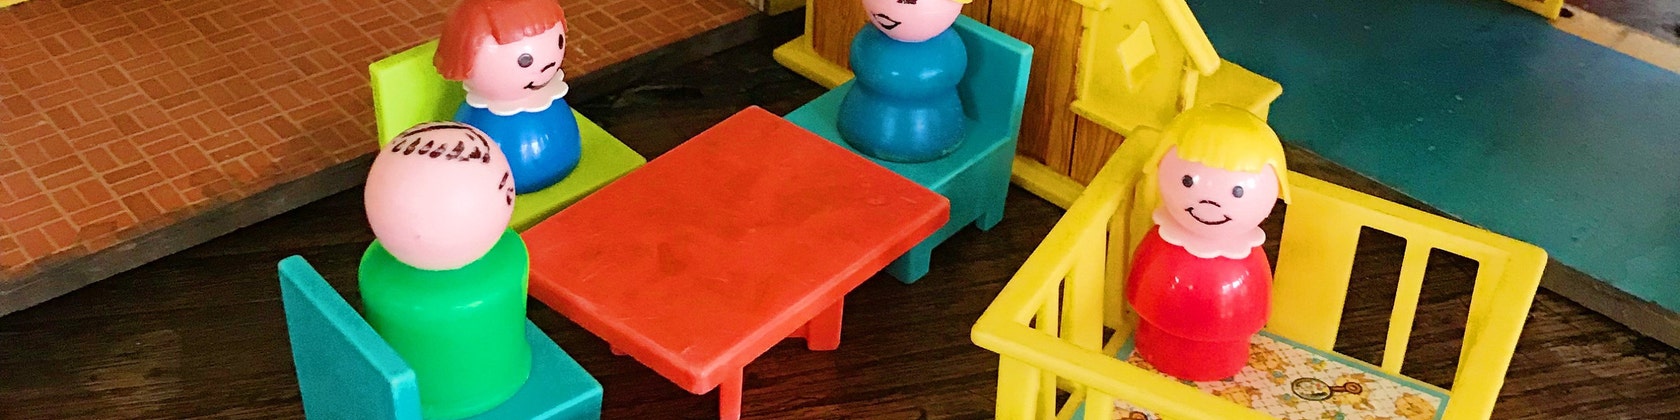 Déja 2 ans - Puzzle Disney Babies Nathan - jouets rétro jeux de